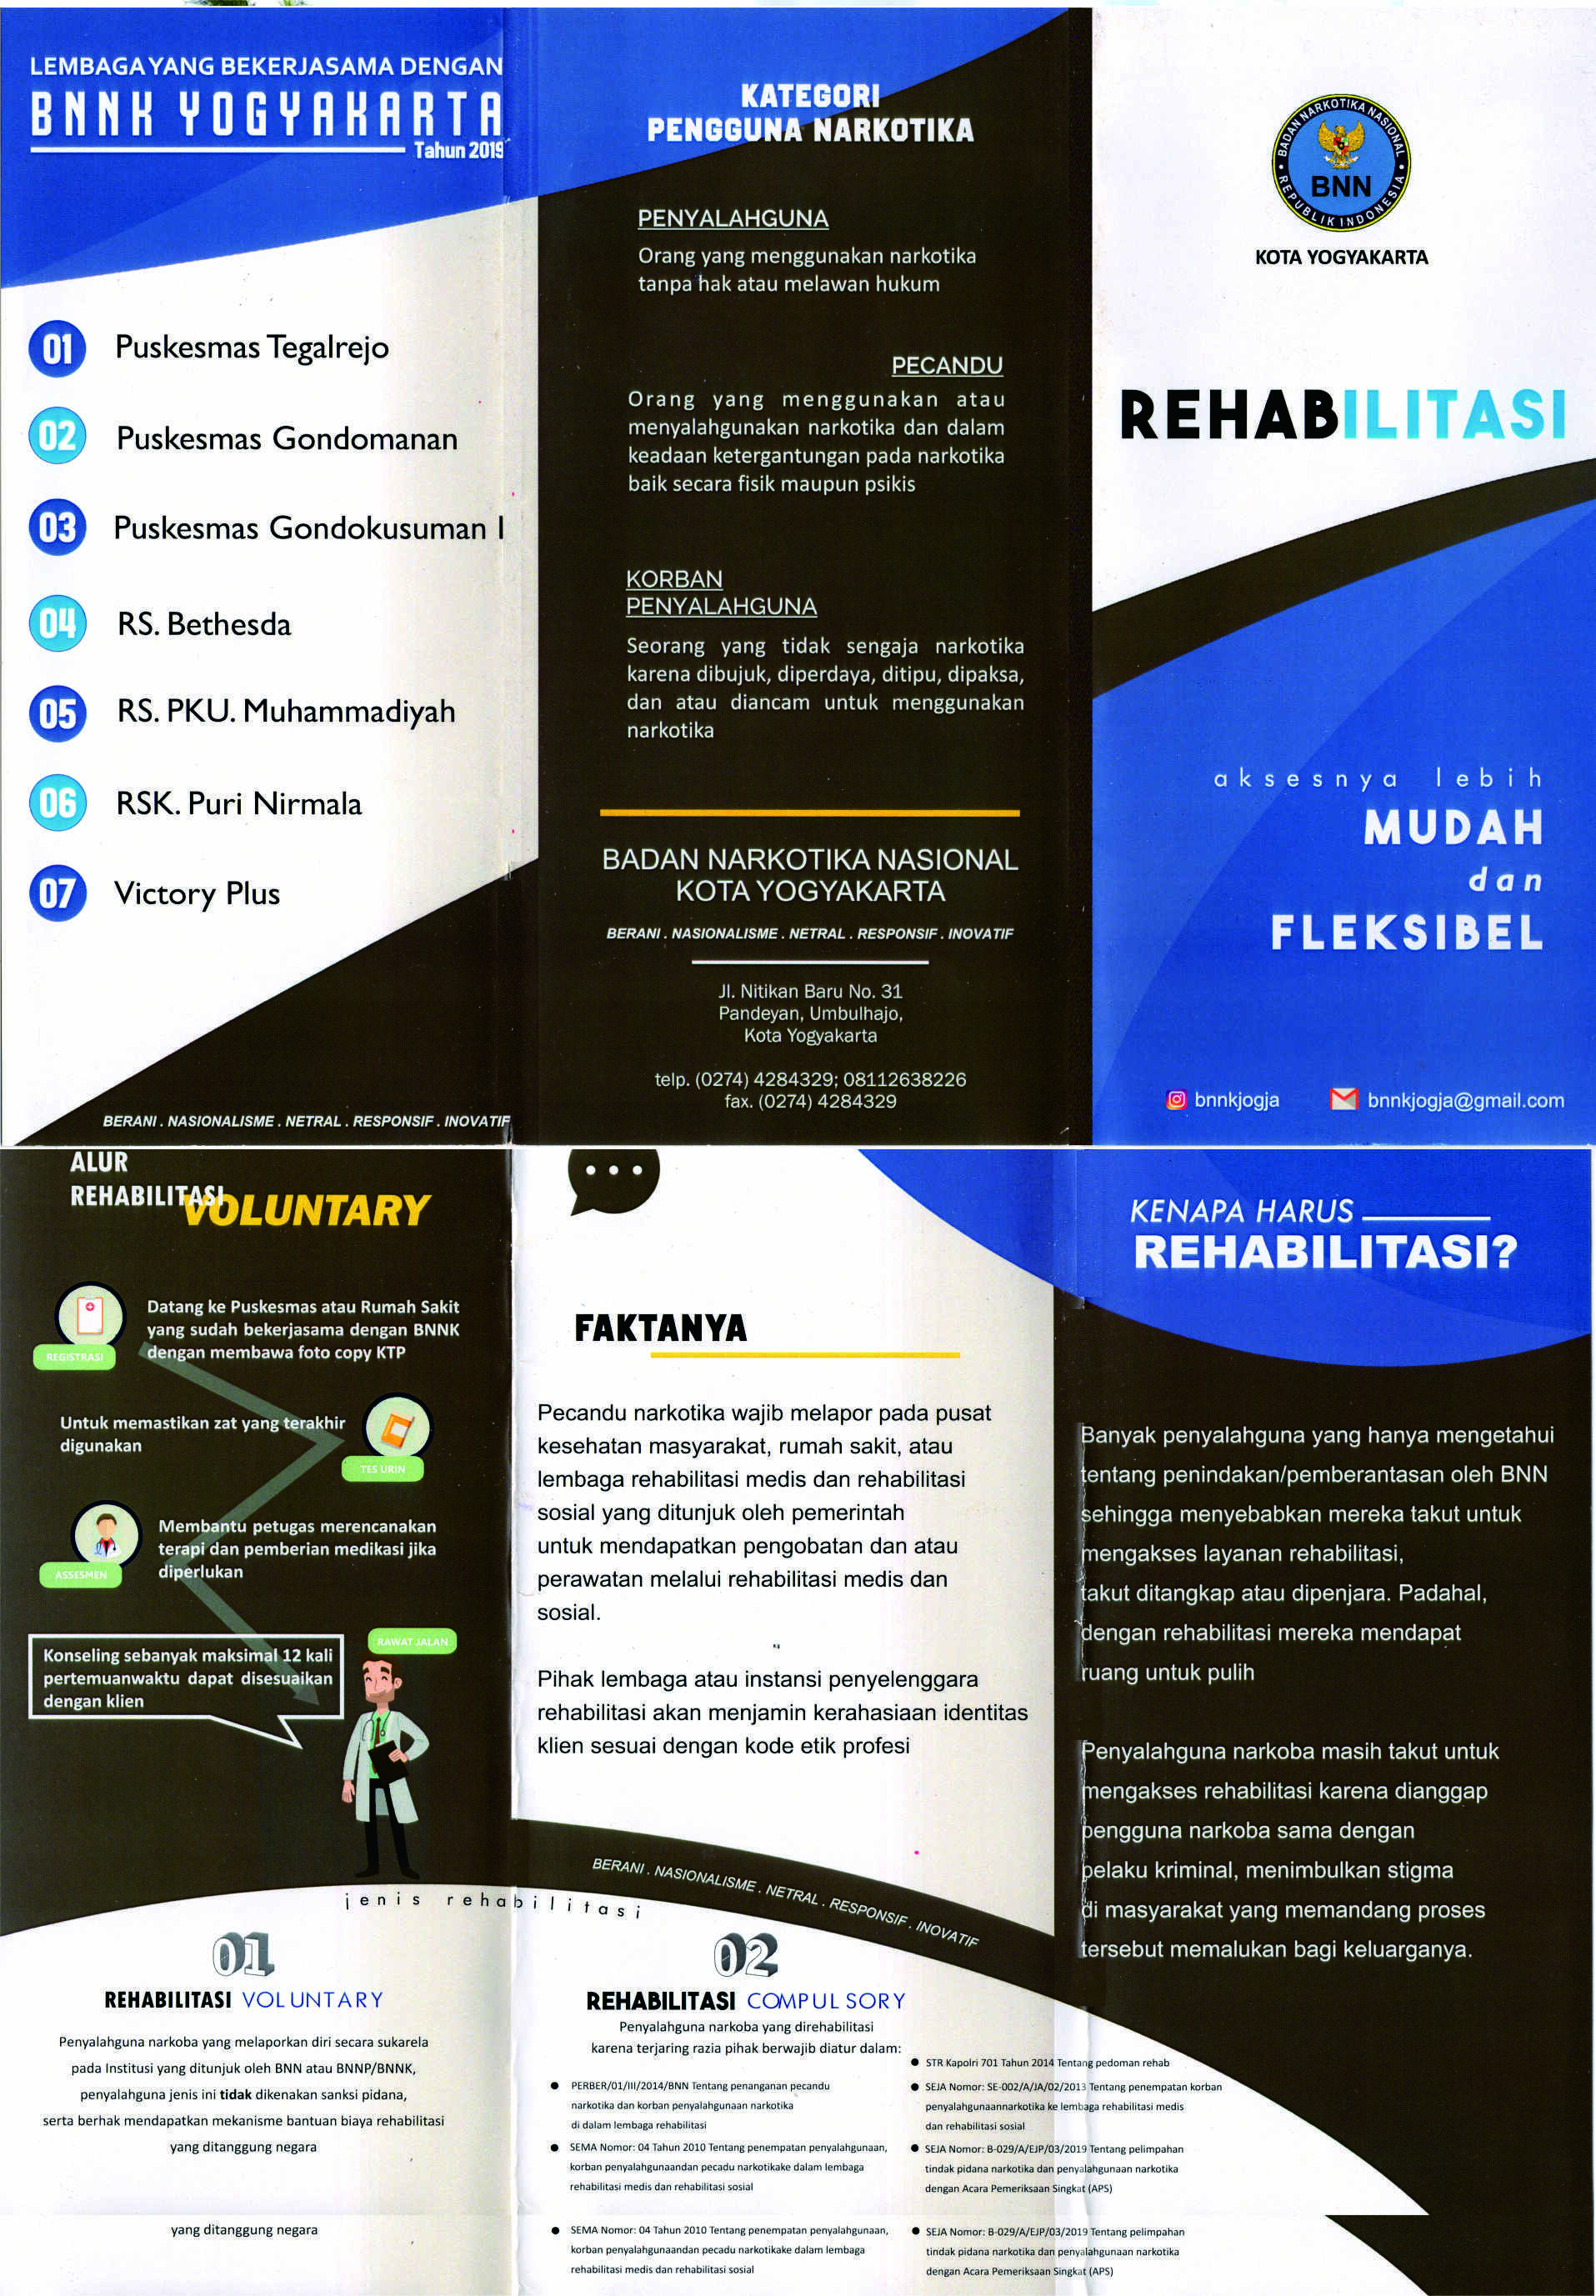 Program Rehabilitasi BNN Kota Yogyakarta